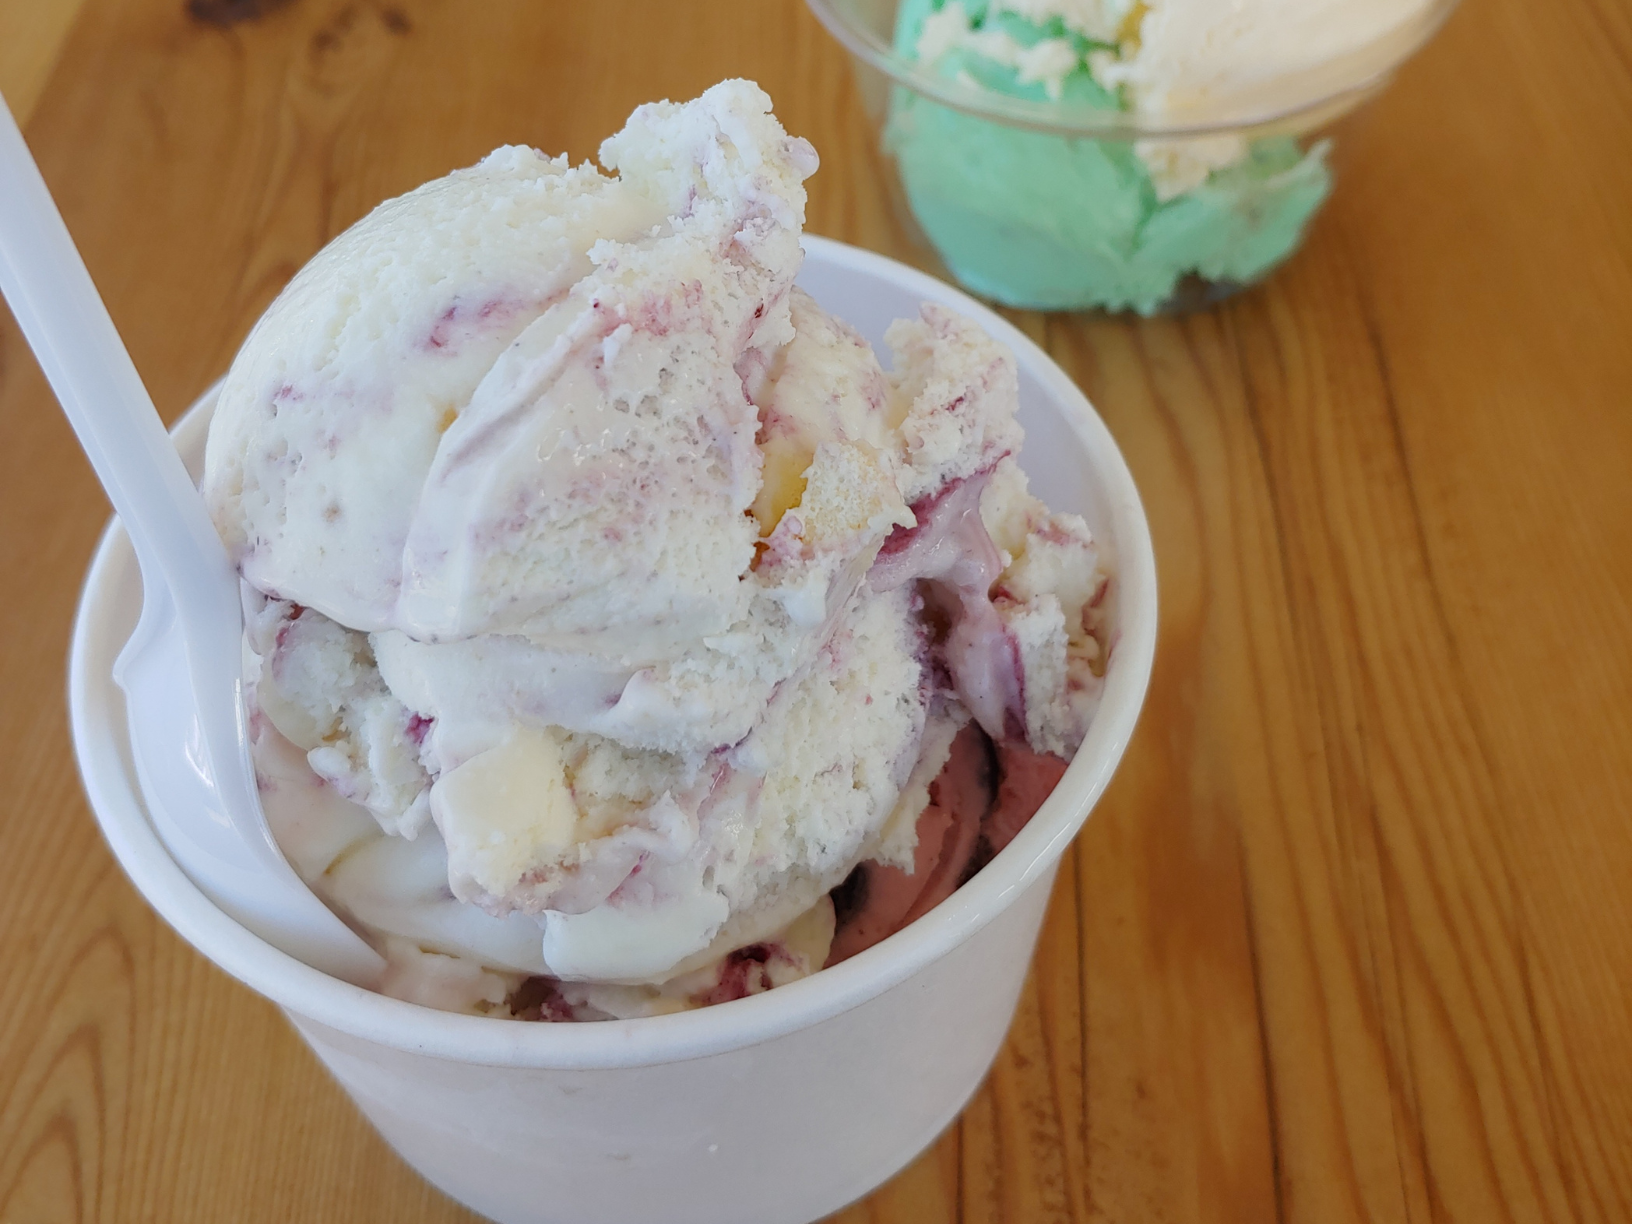 Best Ice Cream Maker (plus Gelato, Sorbet and Frozen Yogurt!) - Dream Scoops